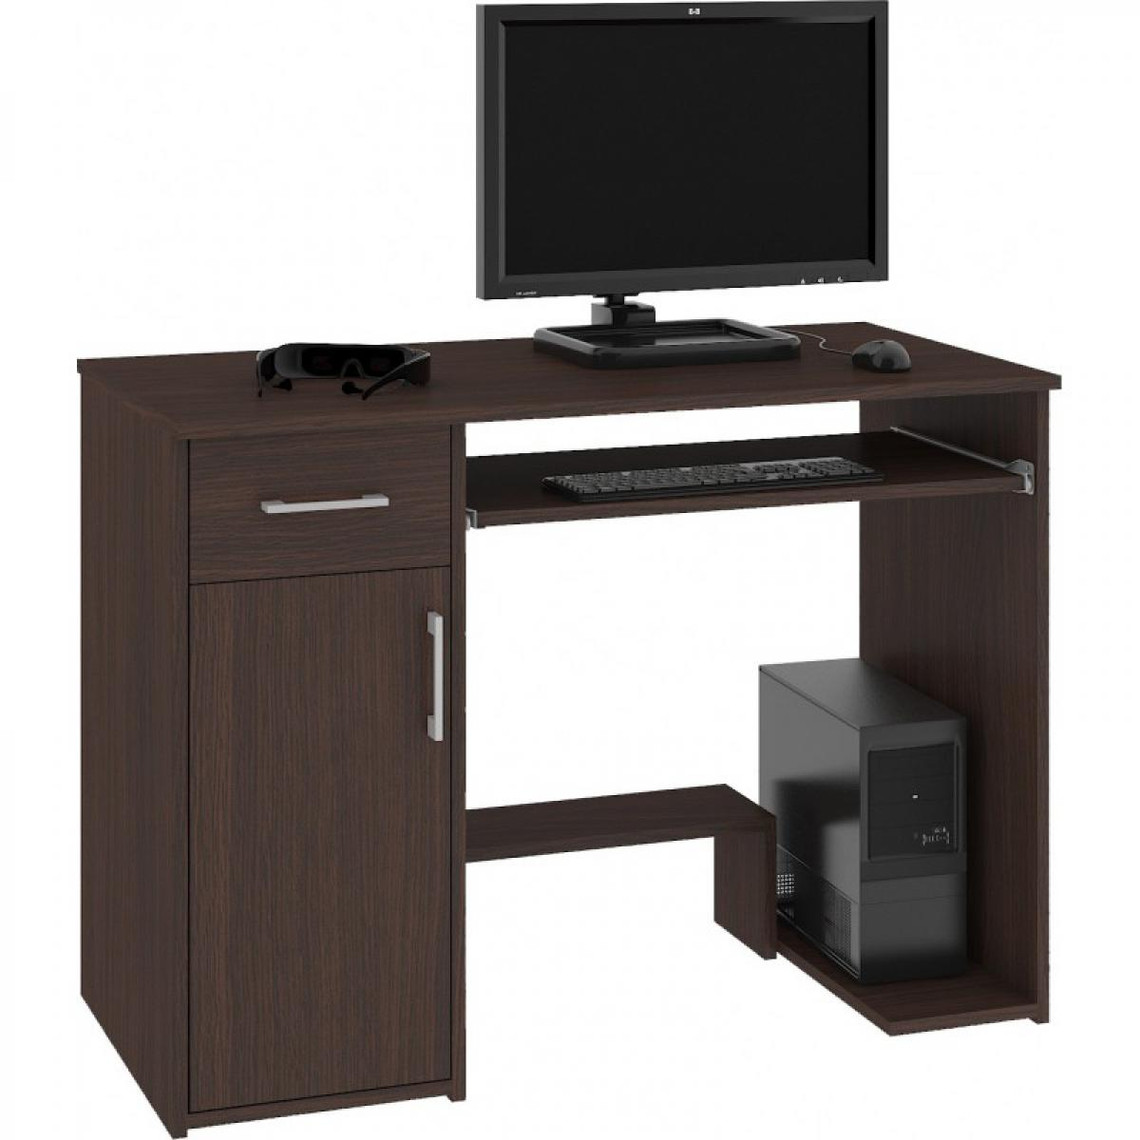 Hucoco KILIG | Bureau PC informatique moderne 90x74x50 cm | Support unité centrale + tiroir + niche rangement | Table ordinateu